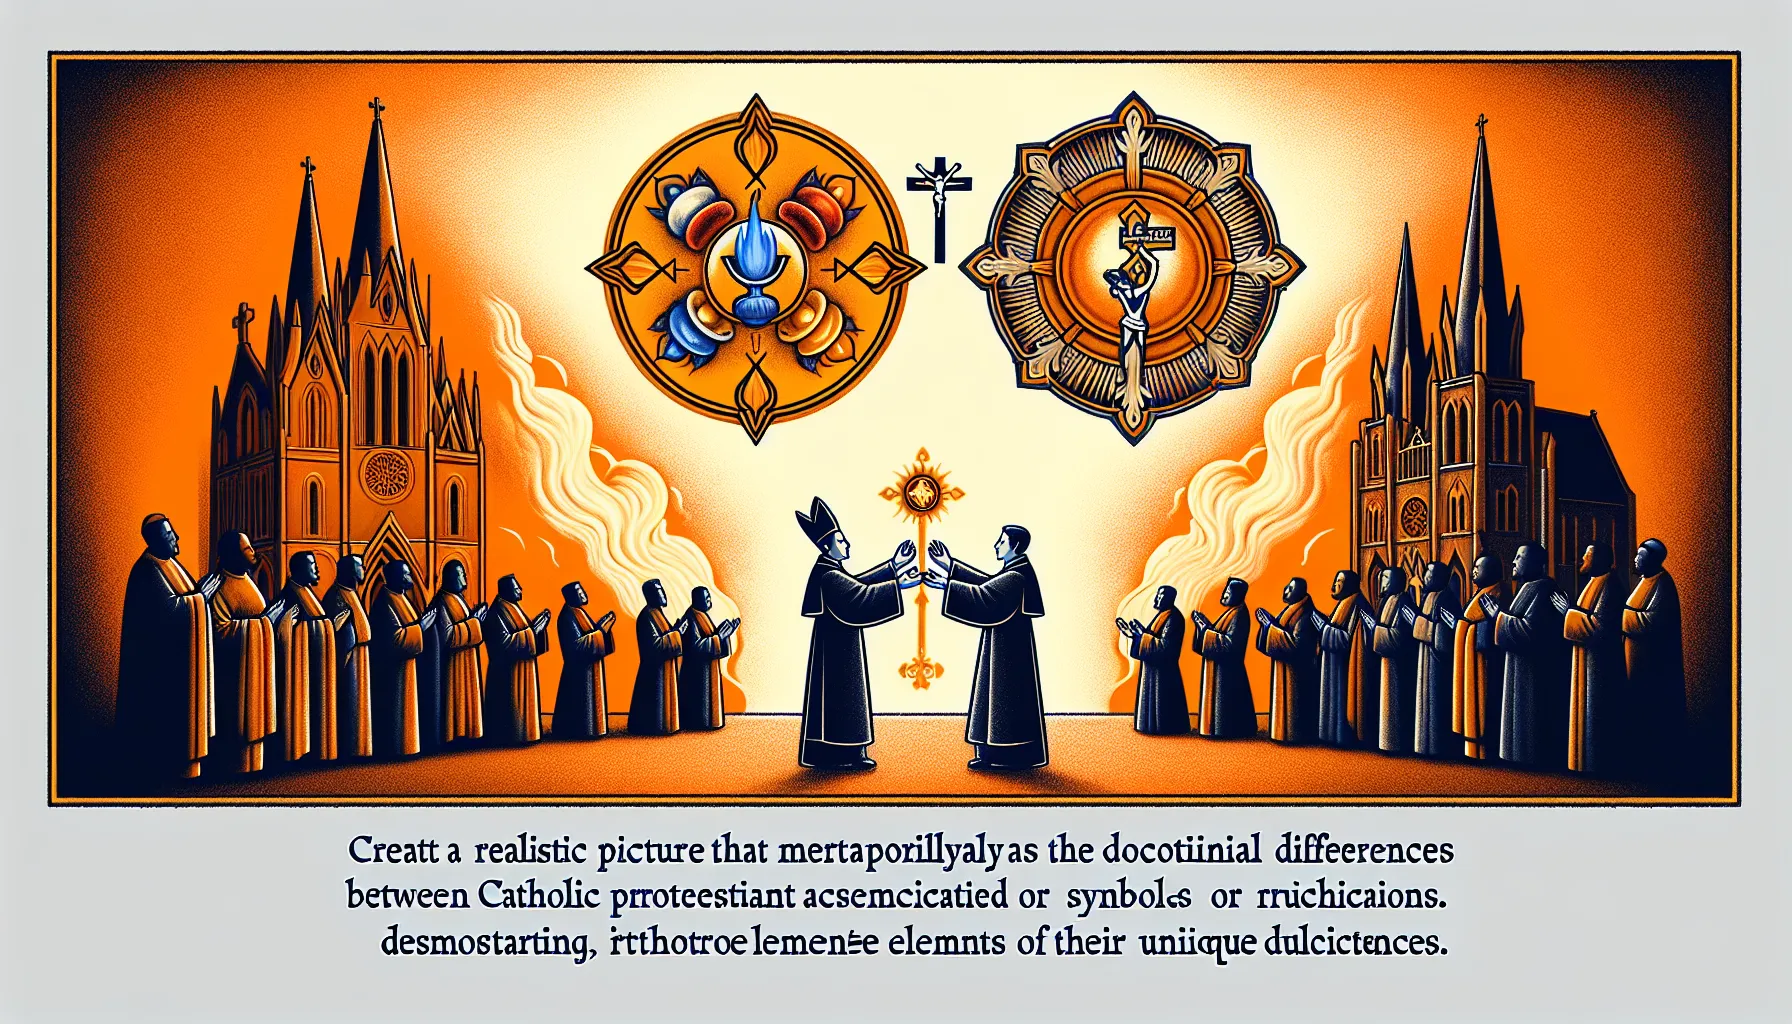 Imagen representativa de las diferencias doctrinales entre católicos y protestantes.